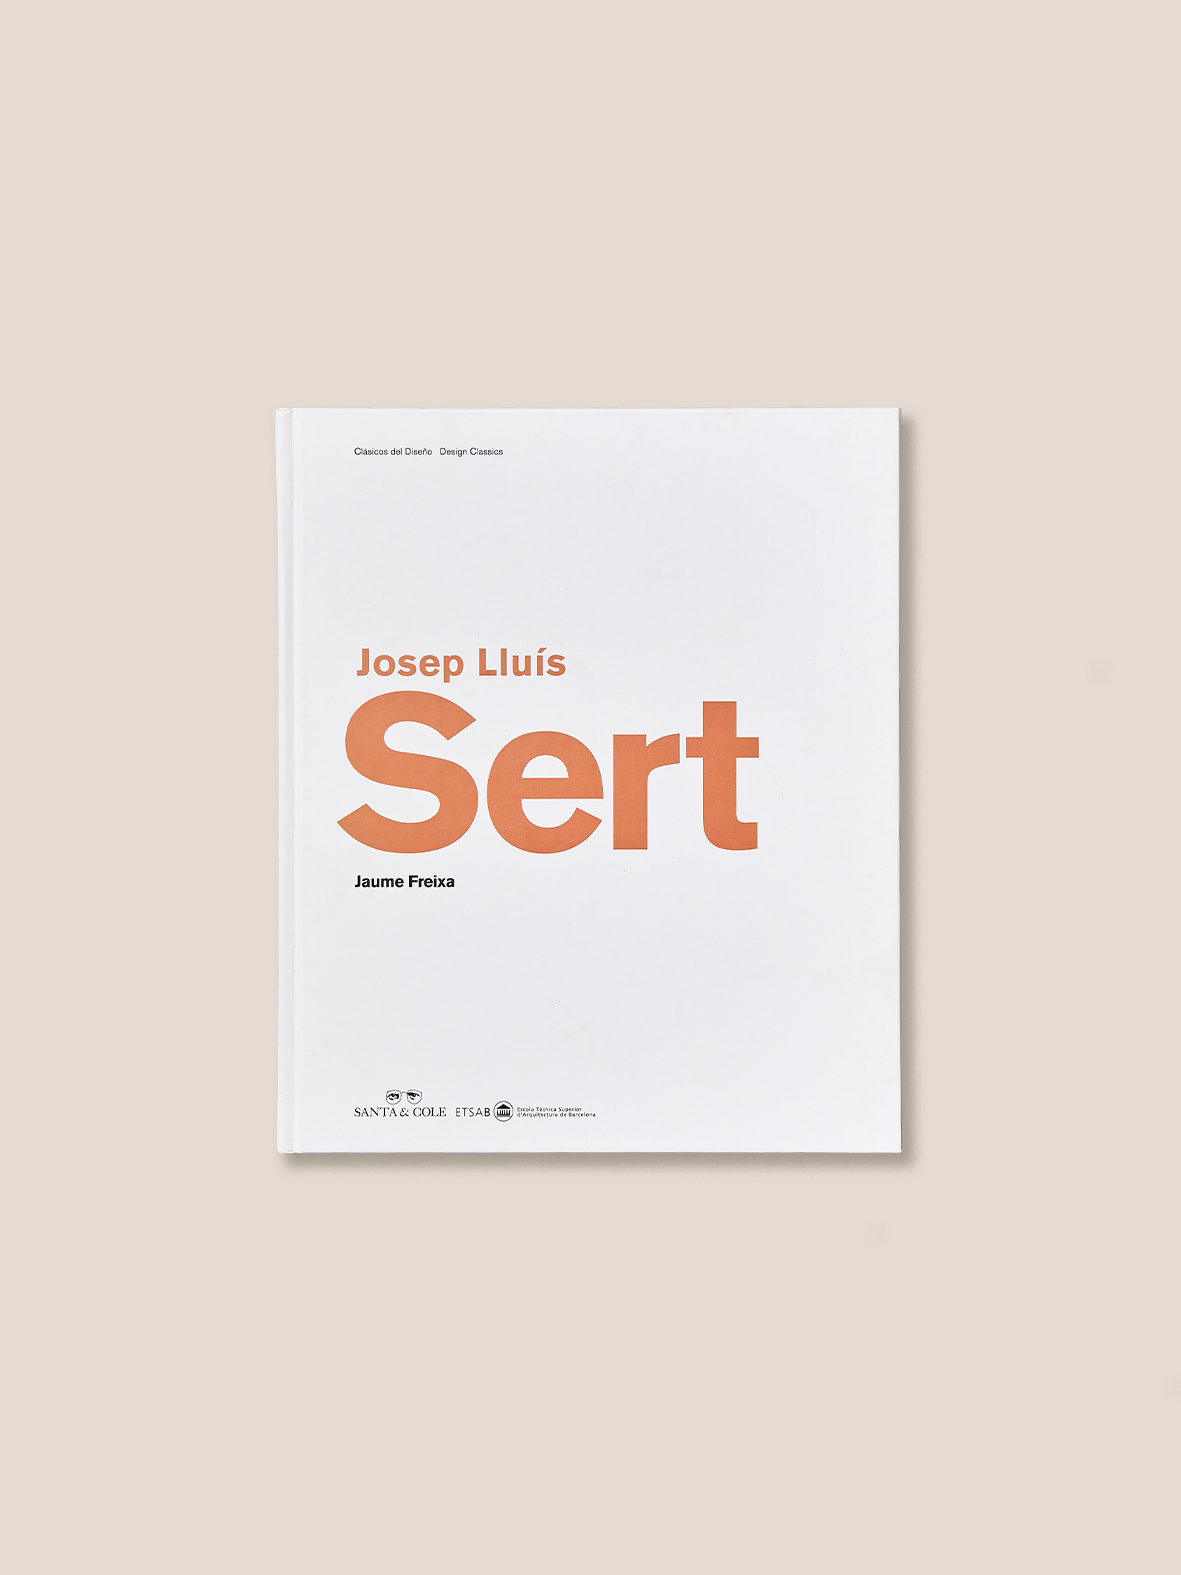 JOSEP LLUÍS SERT - Design Biography Book by Jaume Freixa